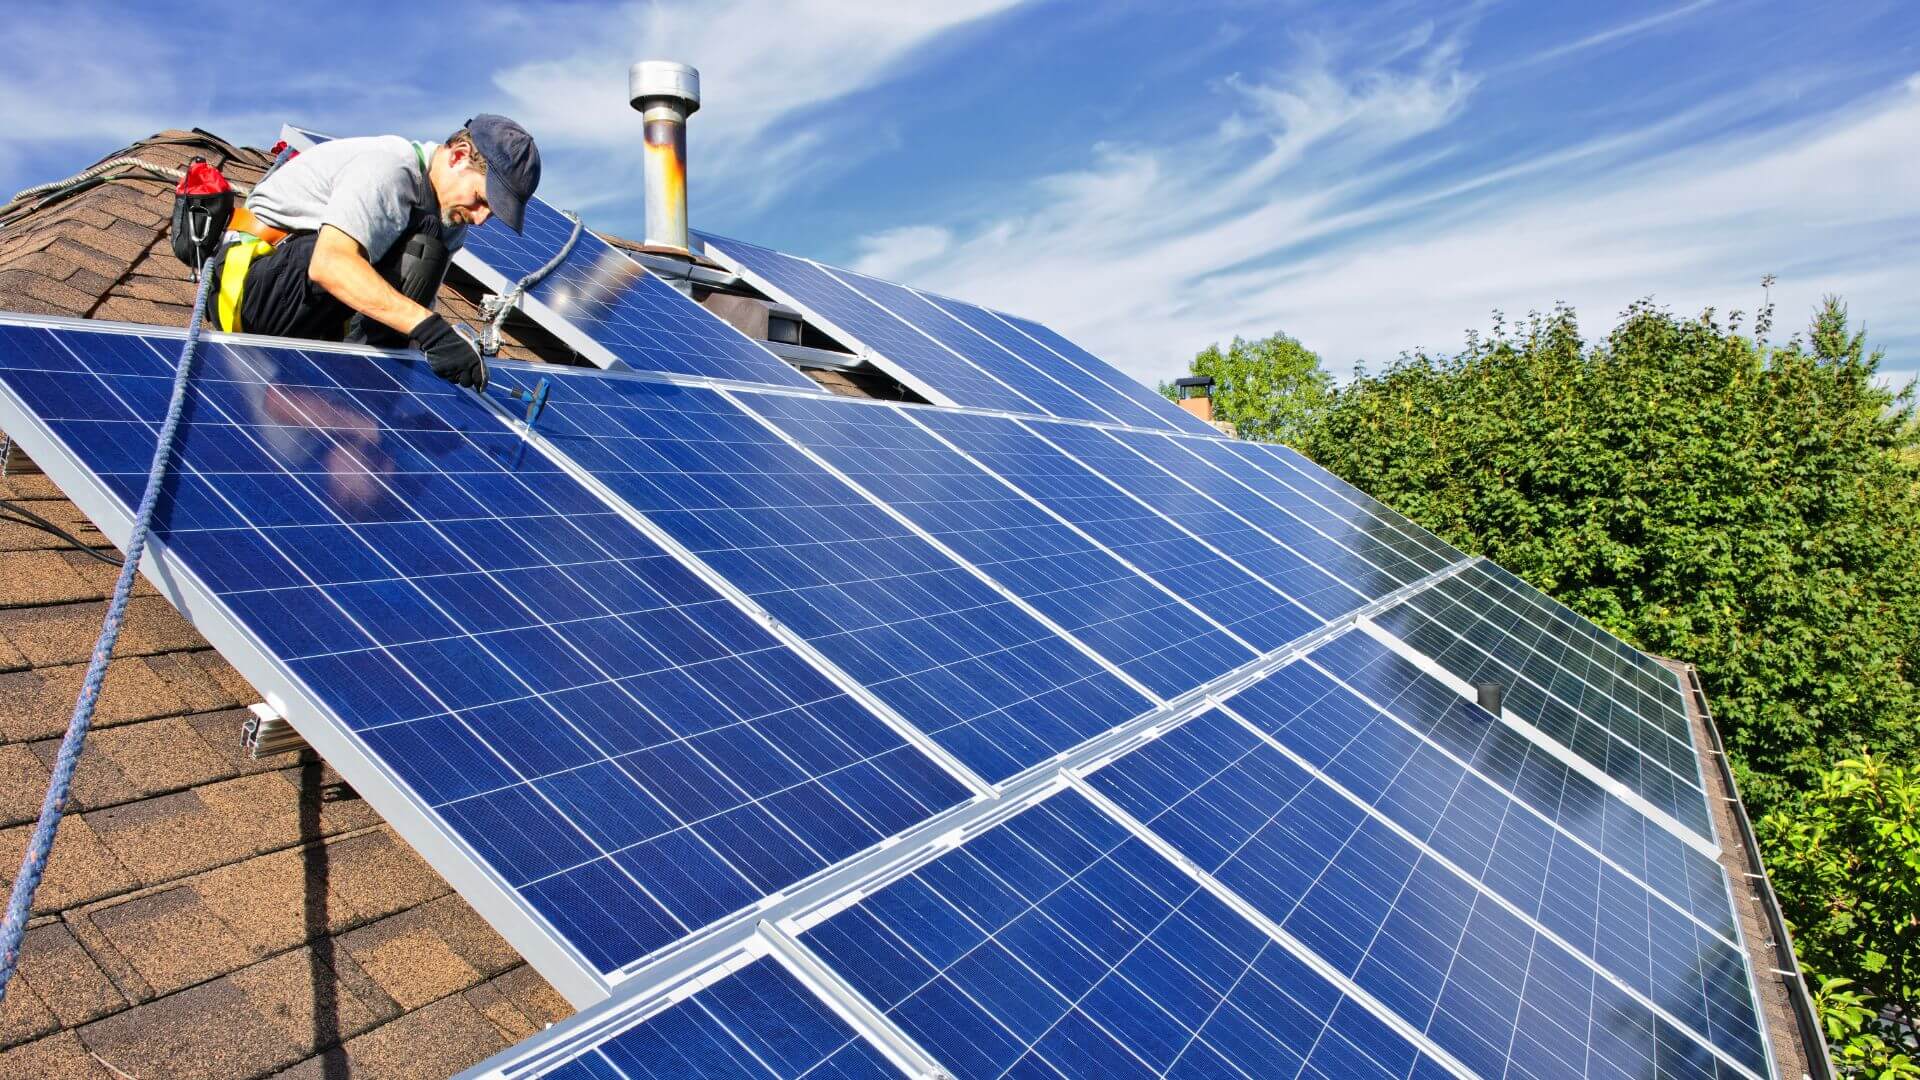 SolarEdge Class Action Lawsuit